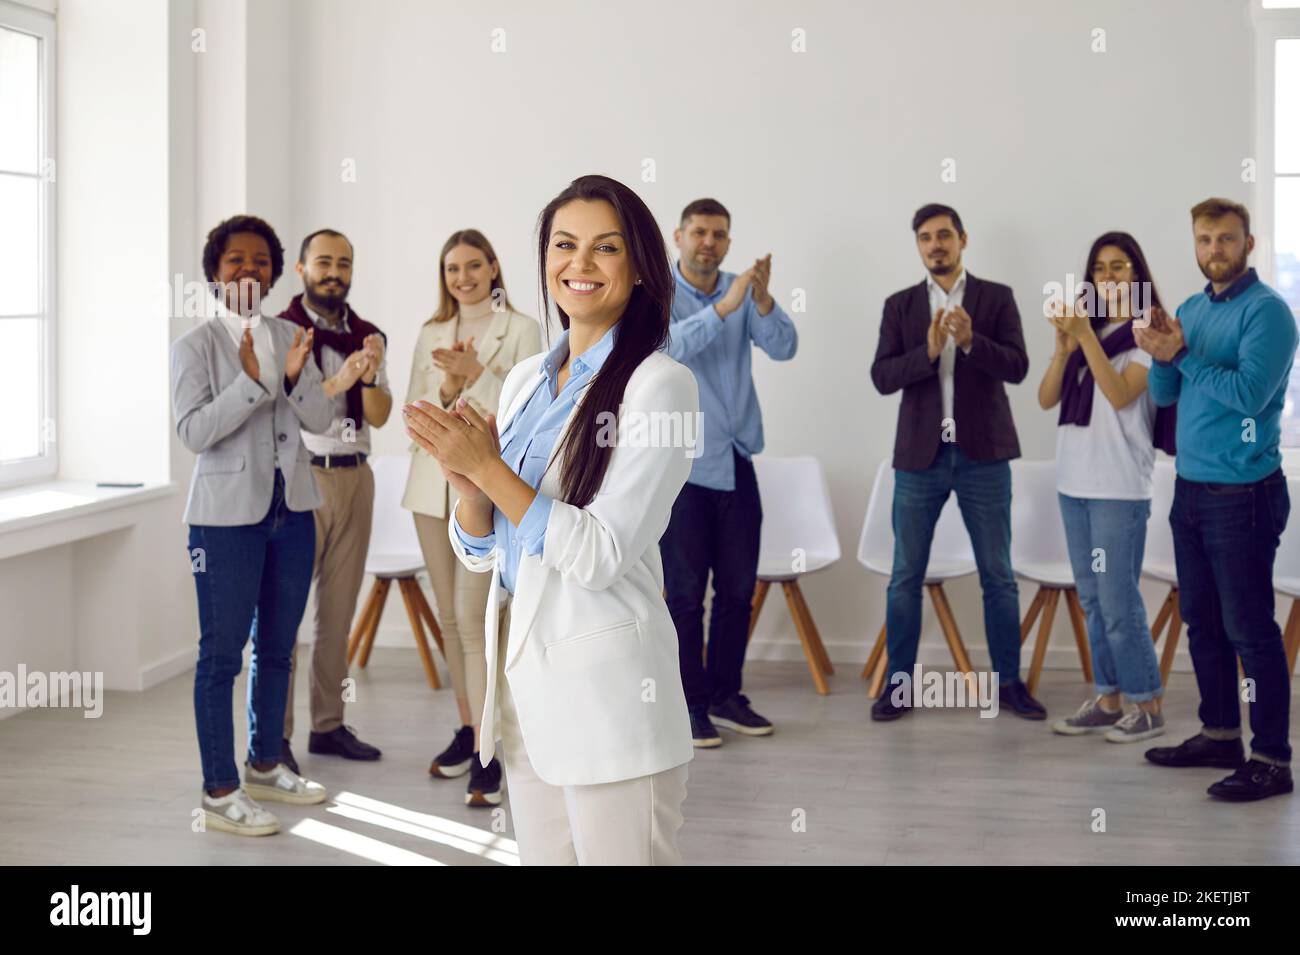 Glückliche, erfolgreiche multirassische Geschäftsteams applaudieren, lachen und jubeln ihren Erfolg an, um ihrem Chef im modernen Büroumfeld zu gratulieren. Stockfoto